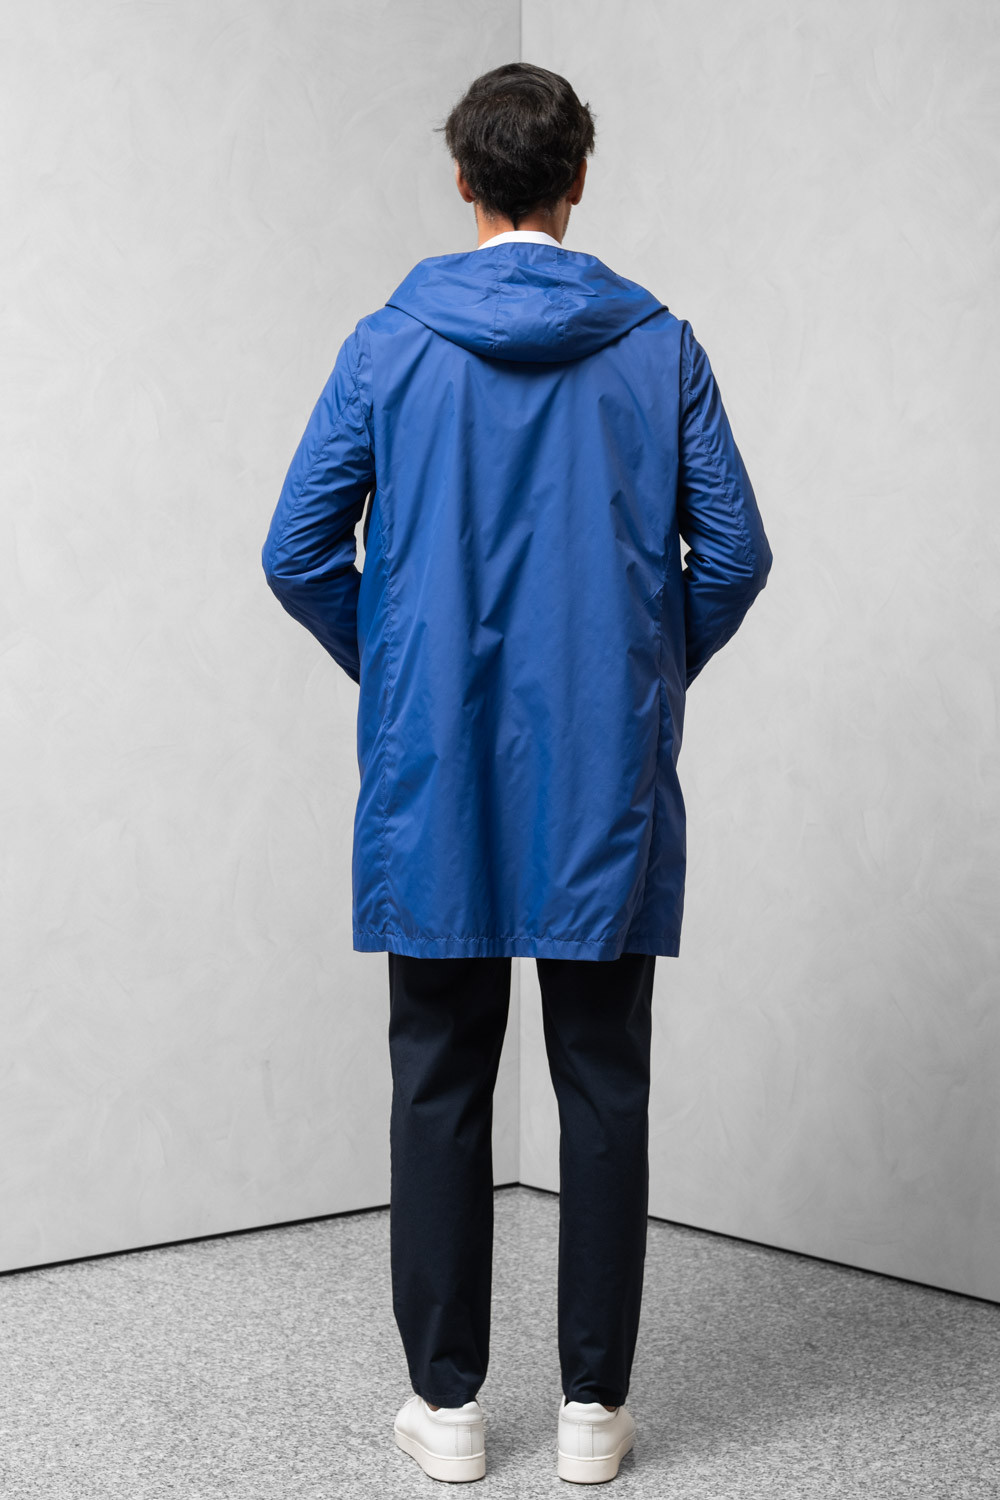 Cappotto idrorepellente uomo cappuccio blu 0909 PARDO-150